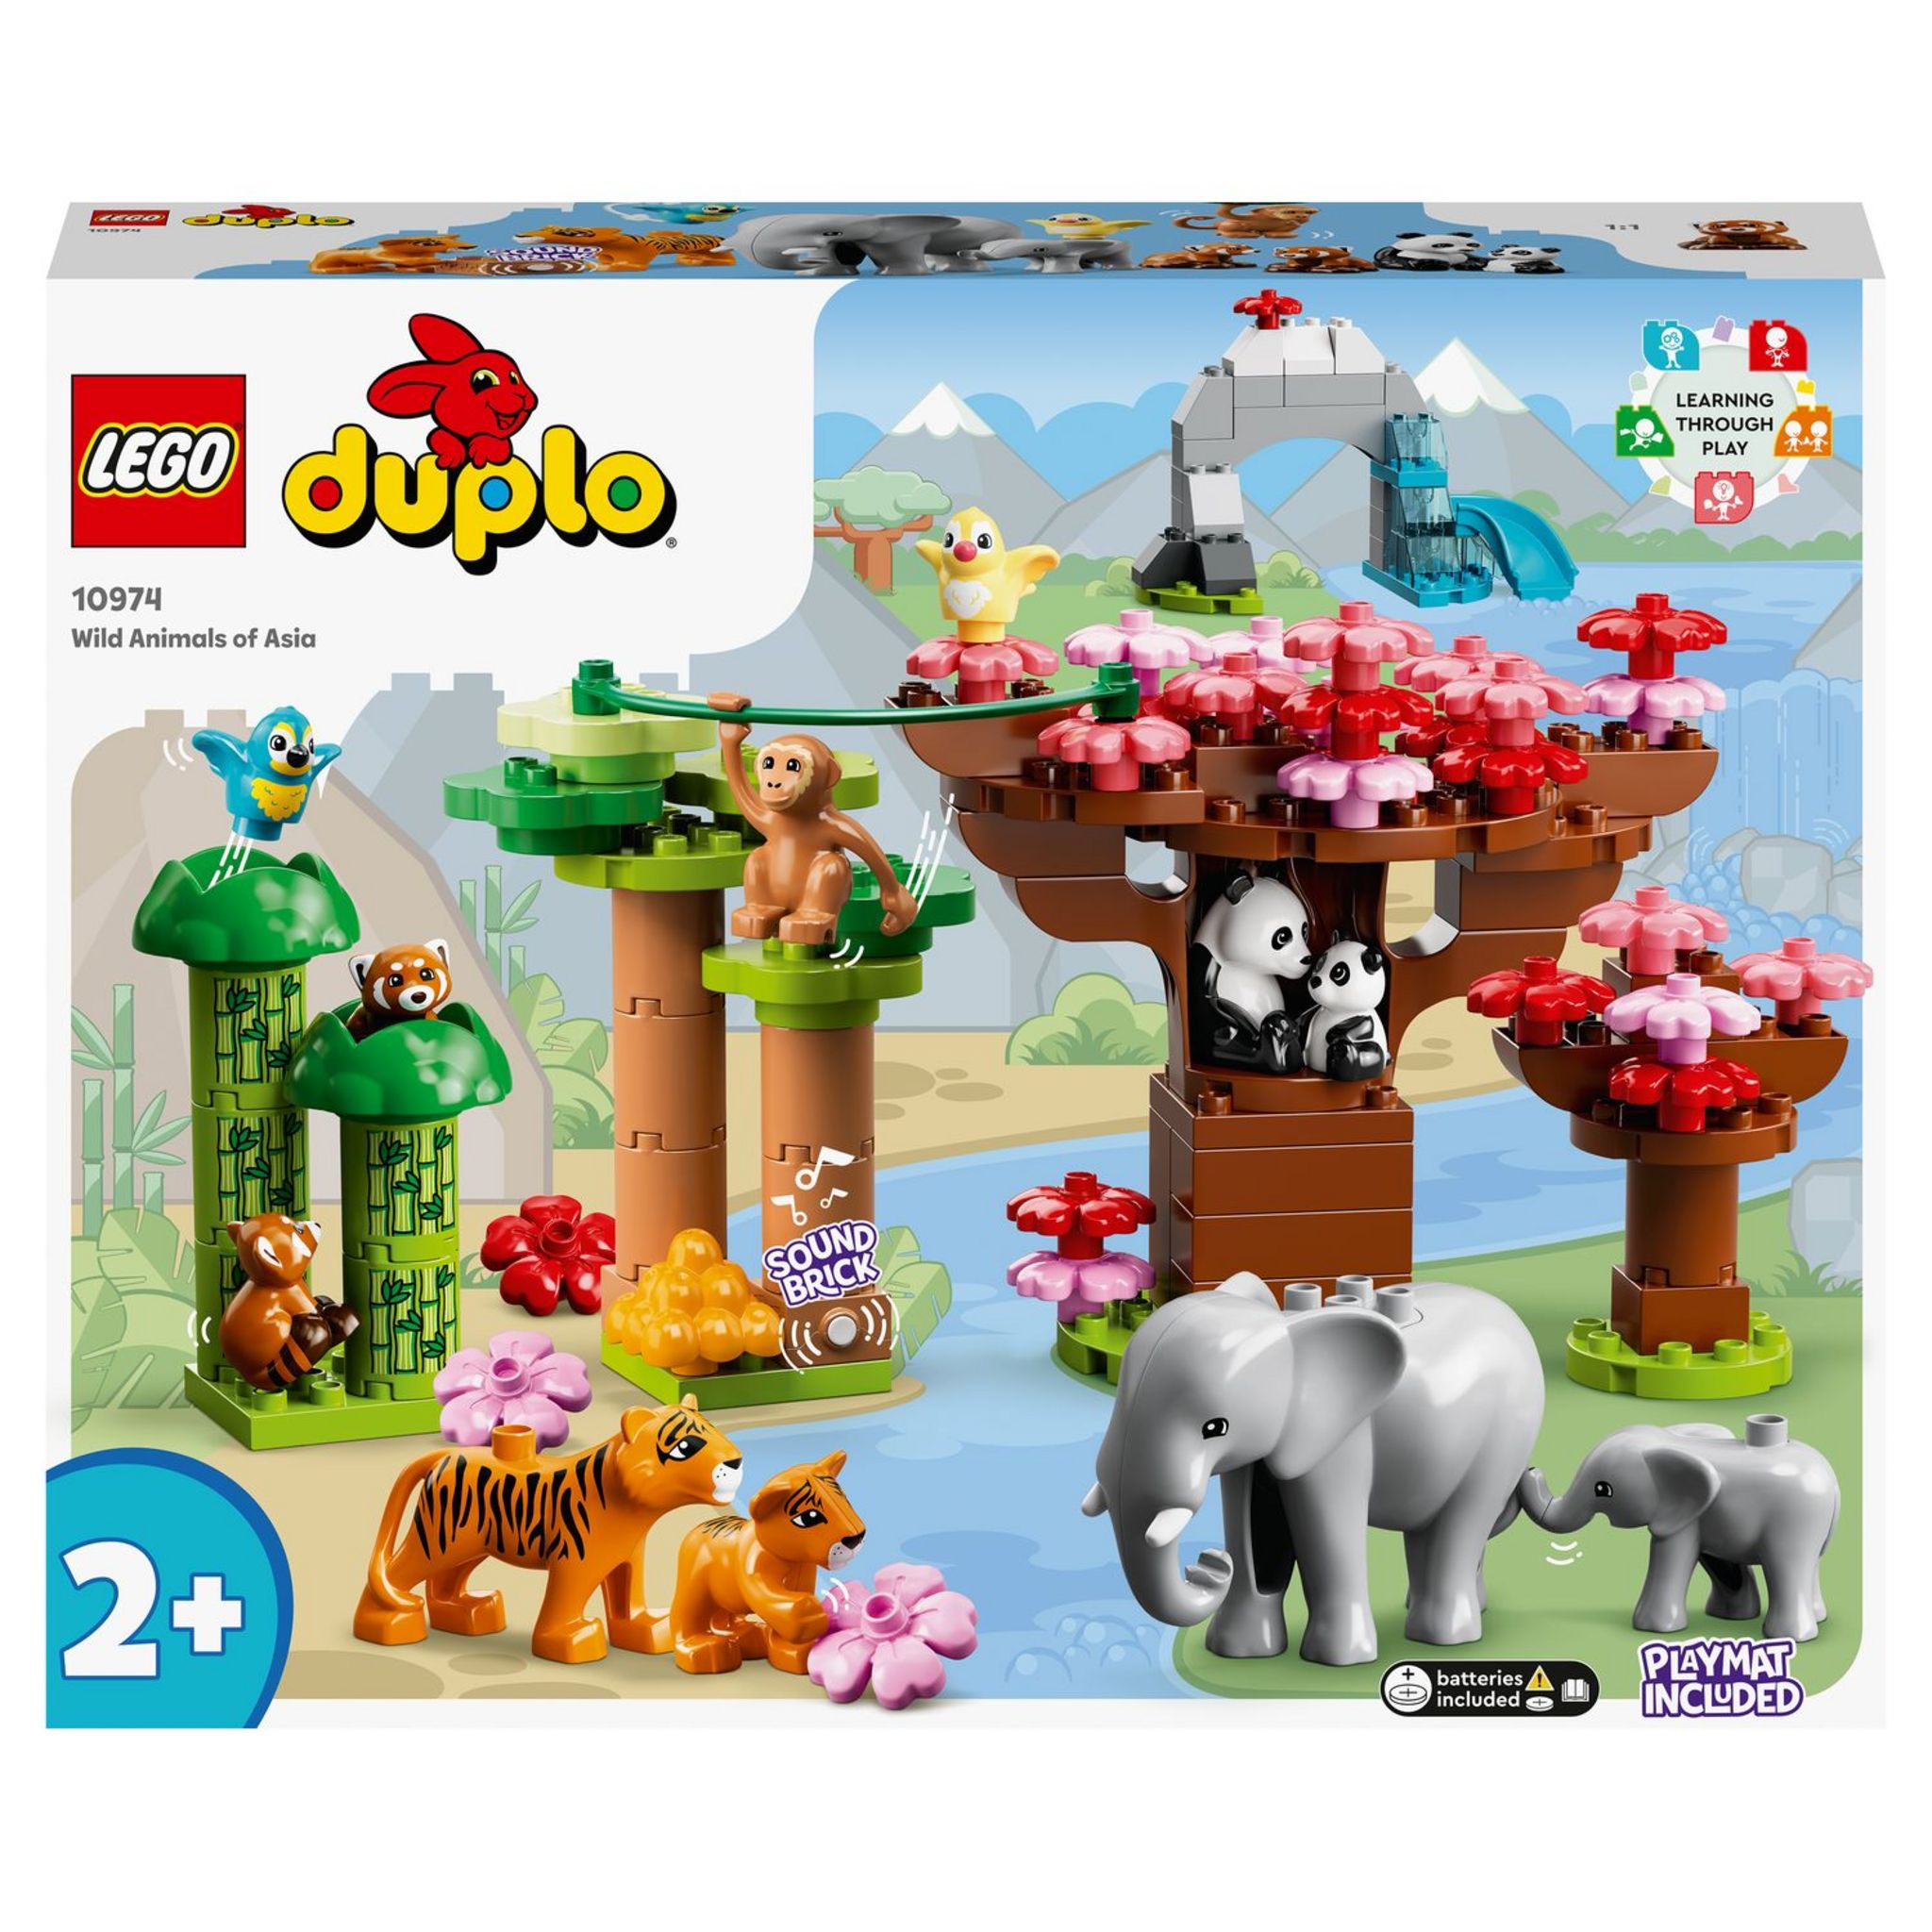 LEGO Duplo 10416 Prendre Soin Des Animaux De La Ferme